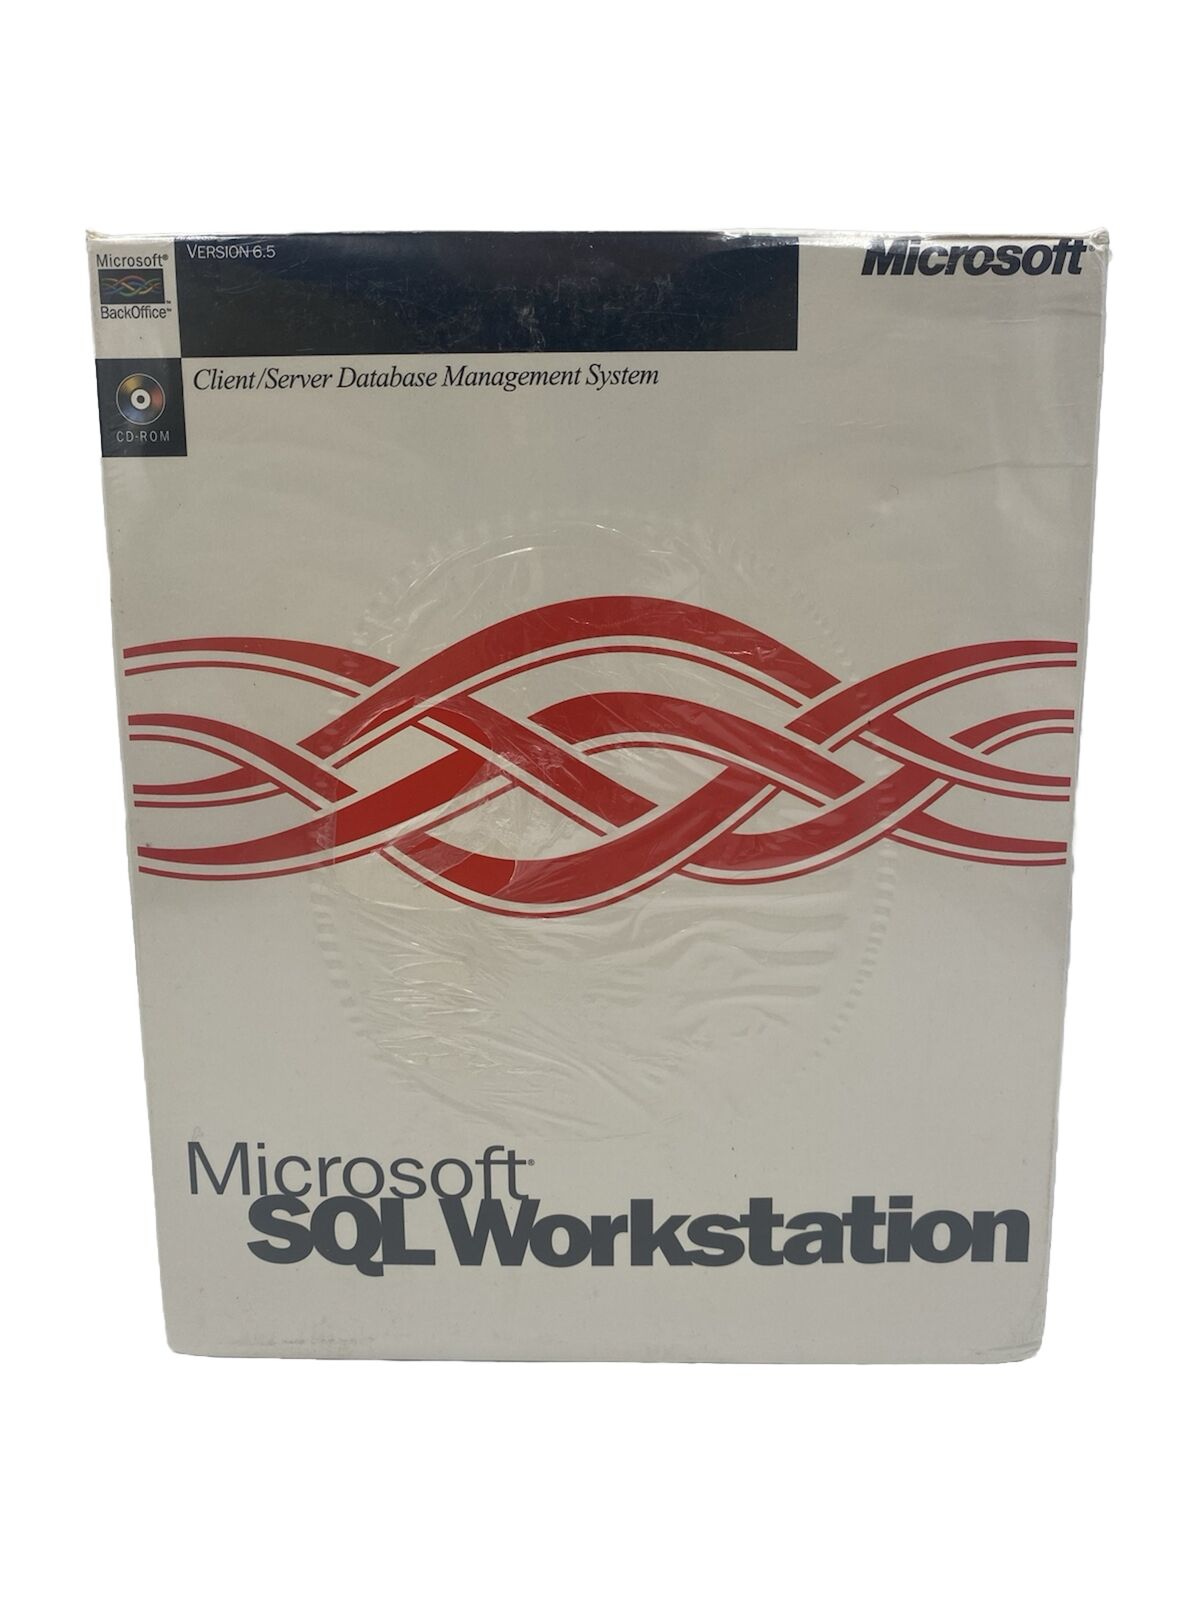 Microsoft SQL Workstation Client/Server Database Management System, Sealed Rare